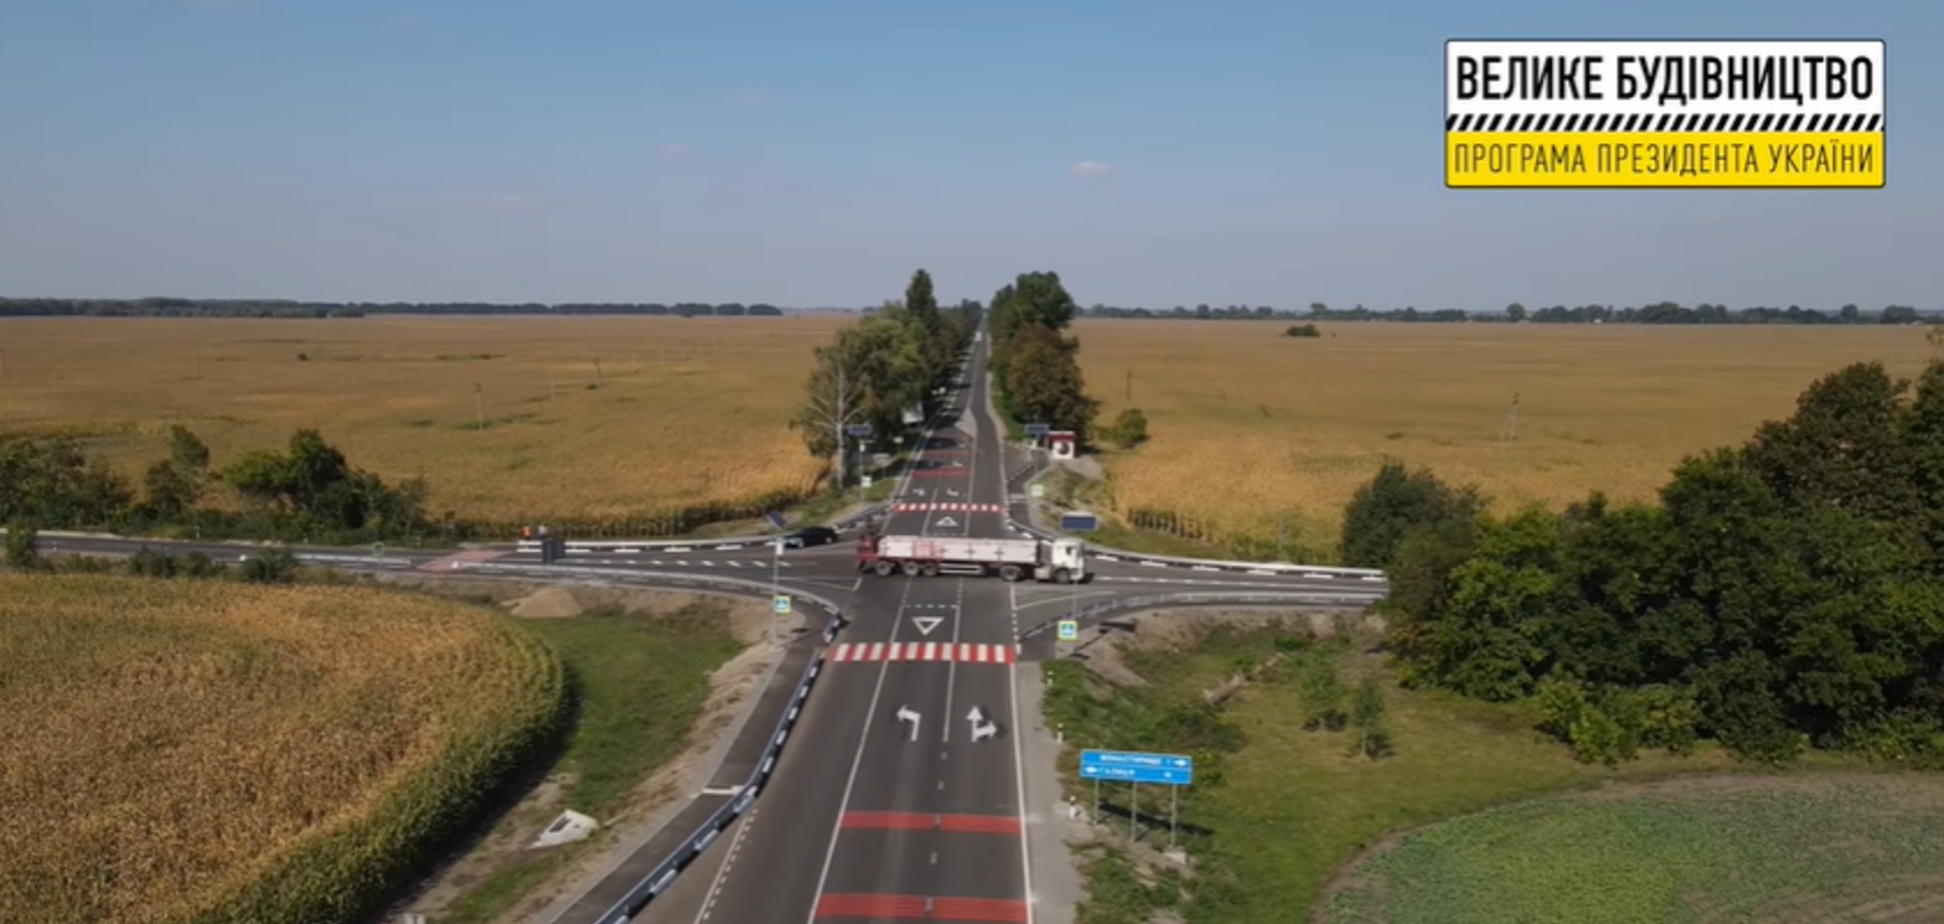 'Велике будівництво' Зеленського відремонтувало 75 км траси між Ніжином і Прилуками